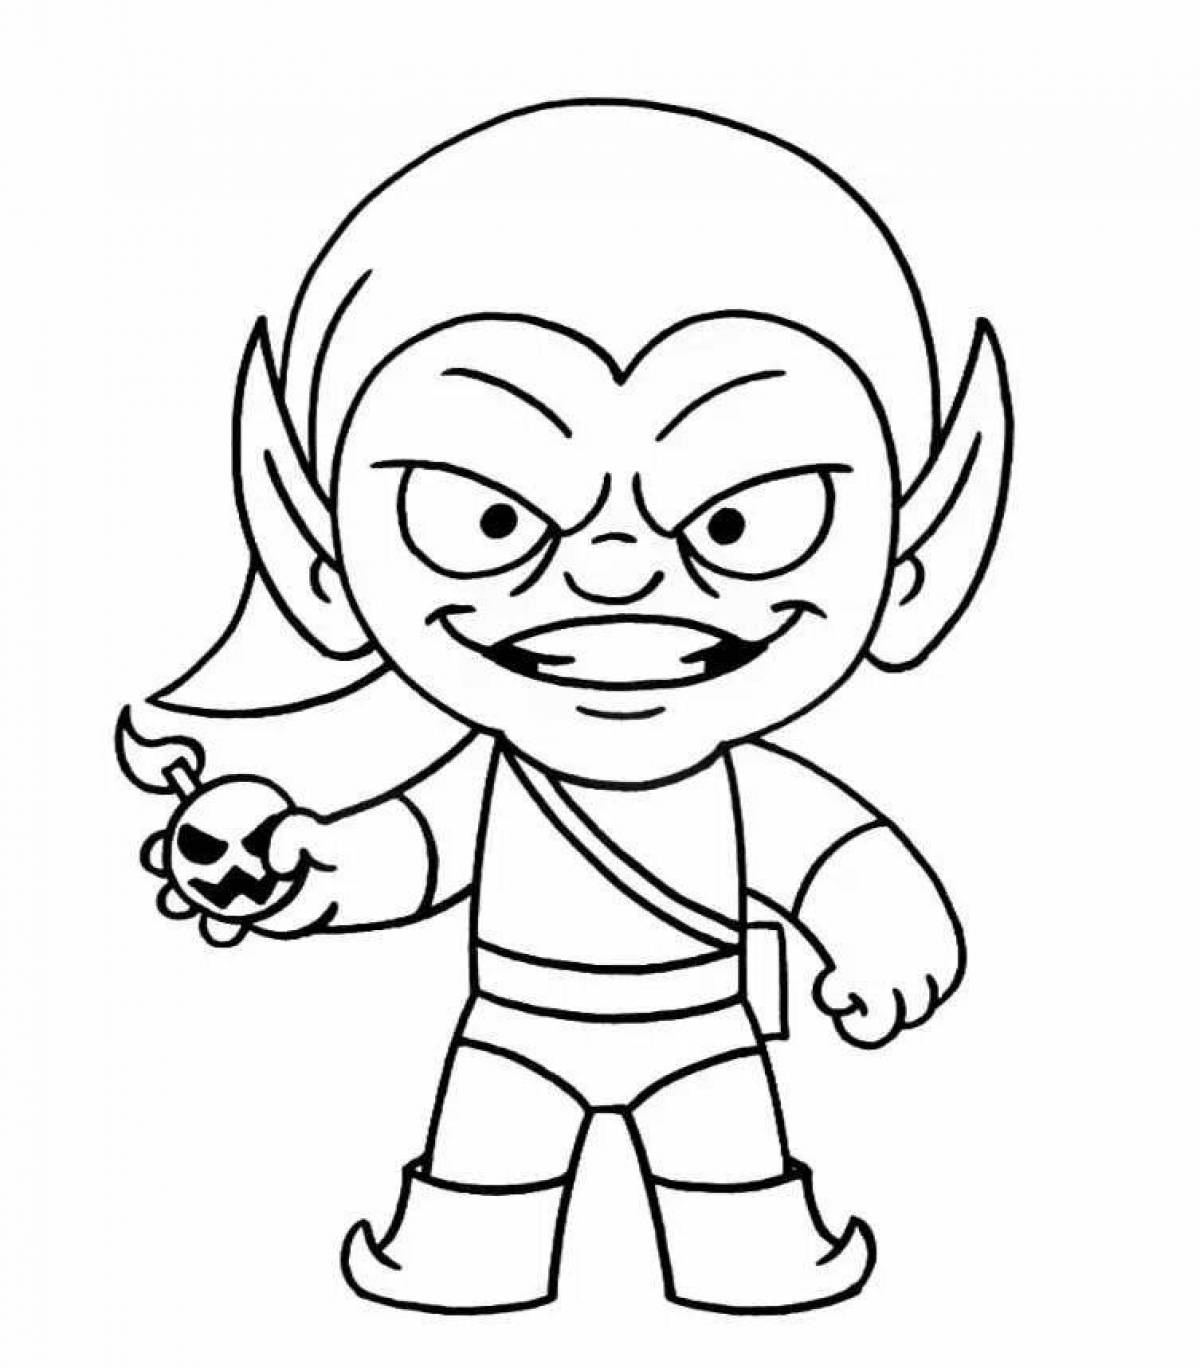 Happy goblin coloring page